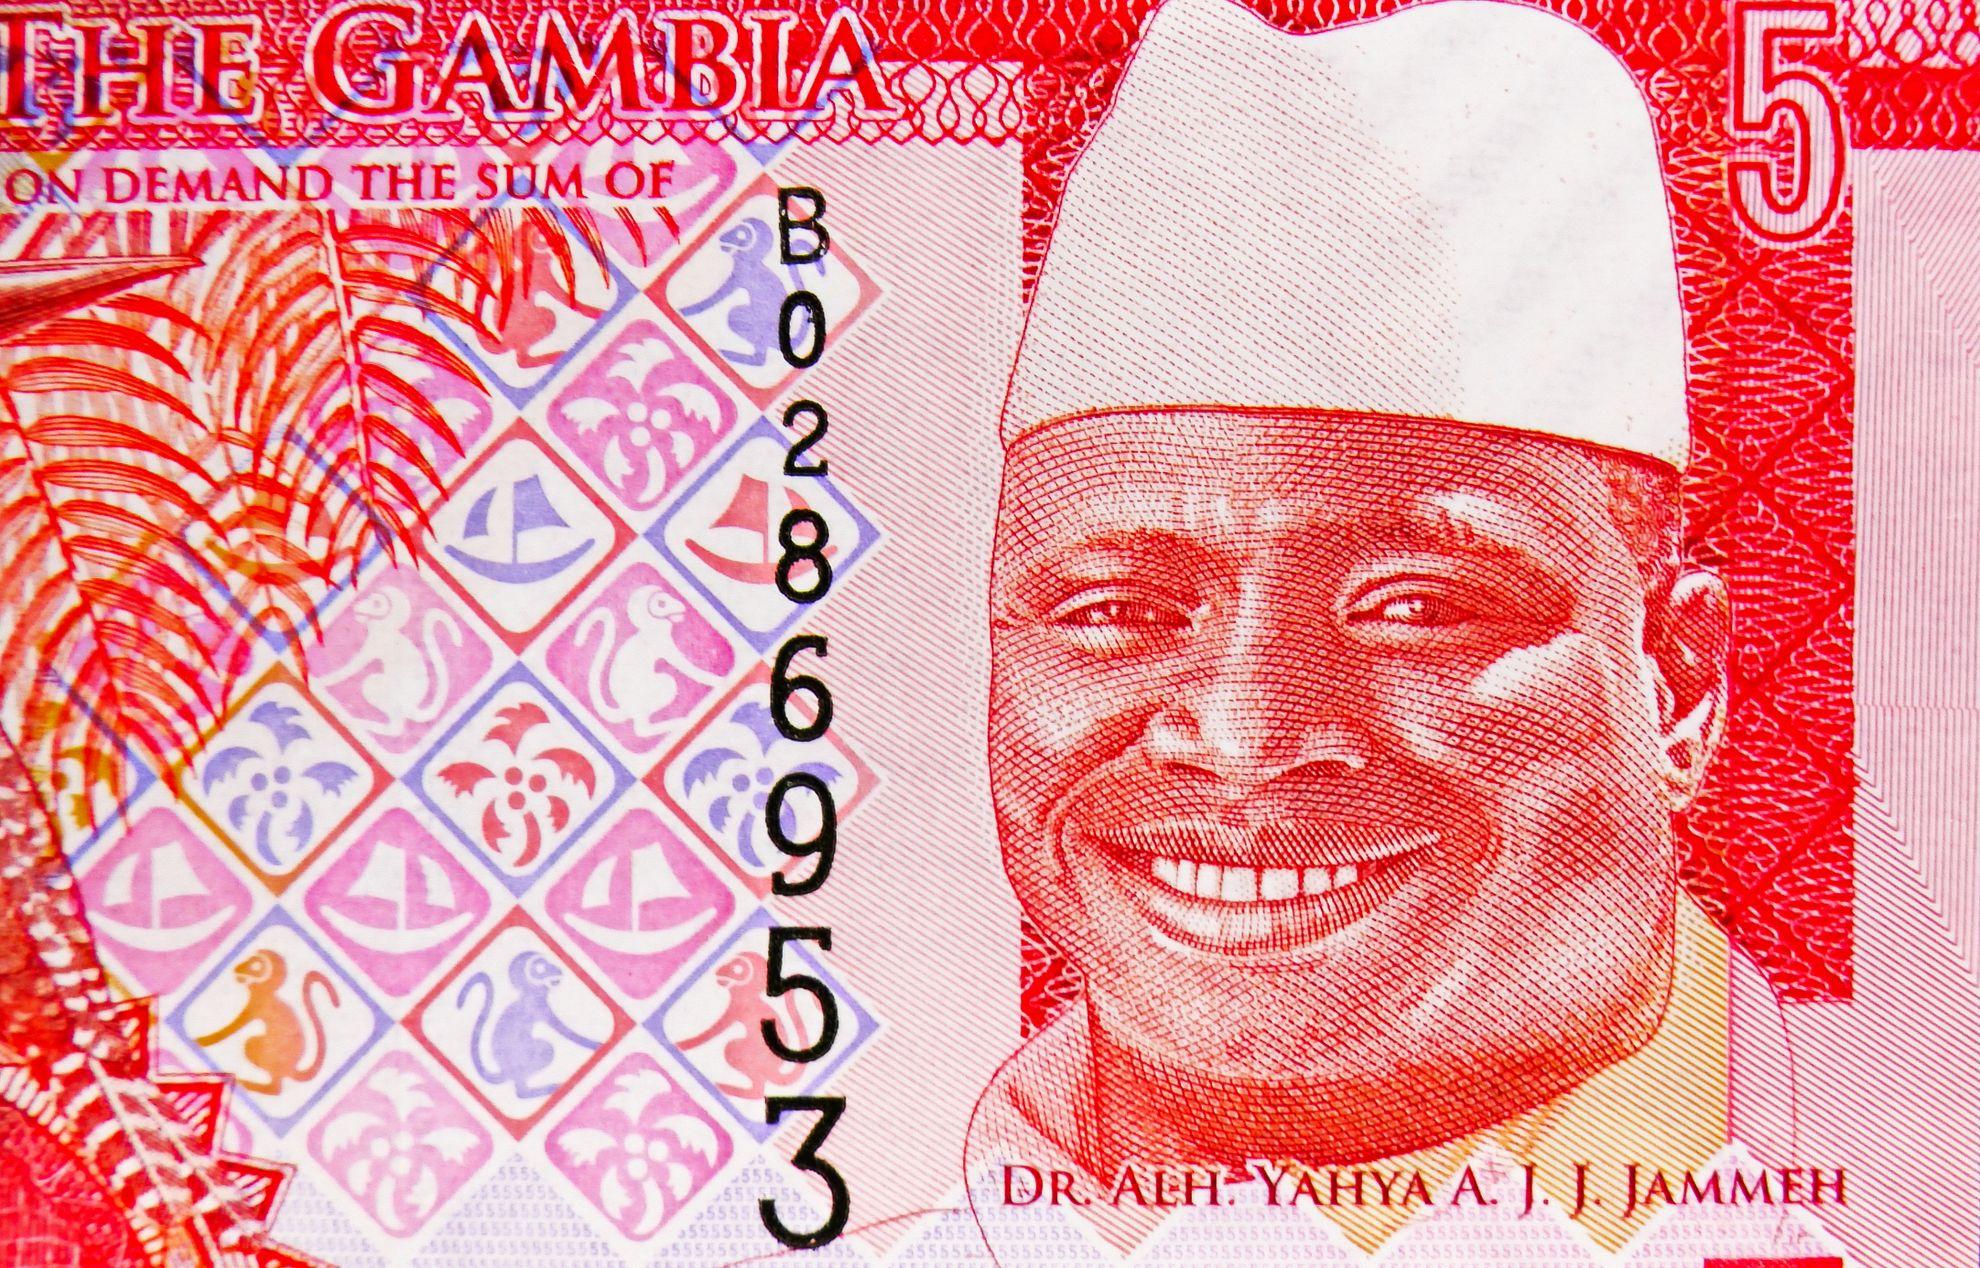 Bancnotă de 5 dalasis, emisă în 2015, Banca Gambiei. Moneda națională, cu chipul președintelui de atunci al Gambiei - Dr. Alh. Yahya Abdul-Aziz Jemus Junkung Jammeh, în funcție: 1994-2017. Foto © Alexander Mirt | Dreamstime.com 